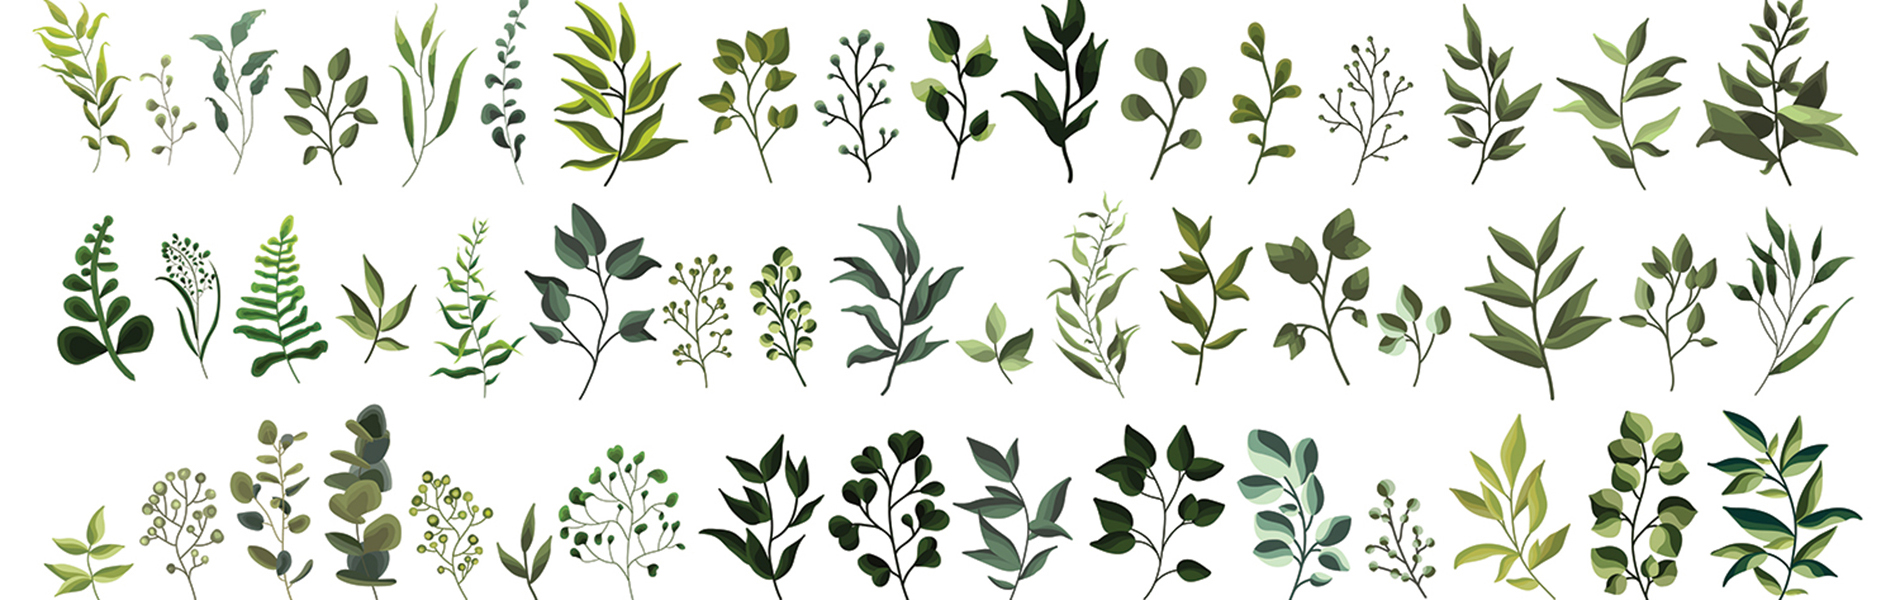 Exemple herbier dessin